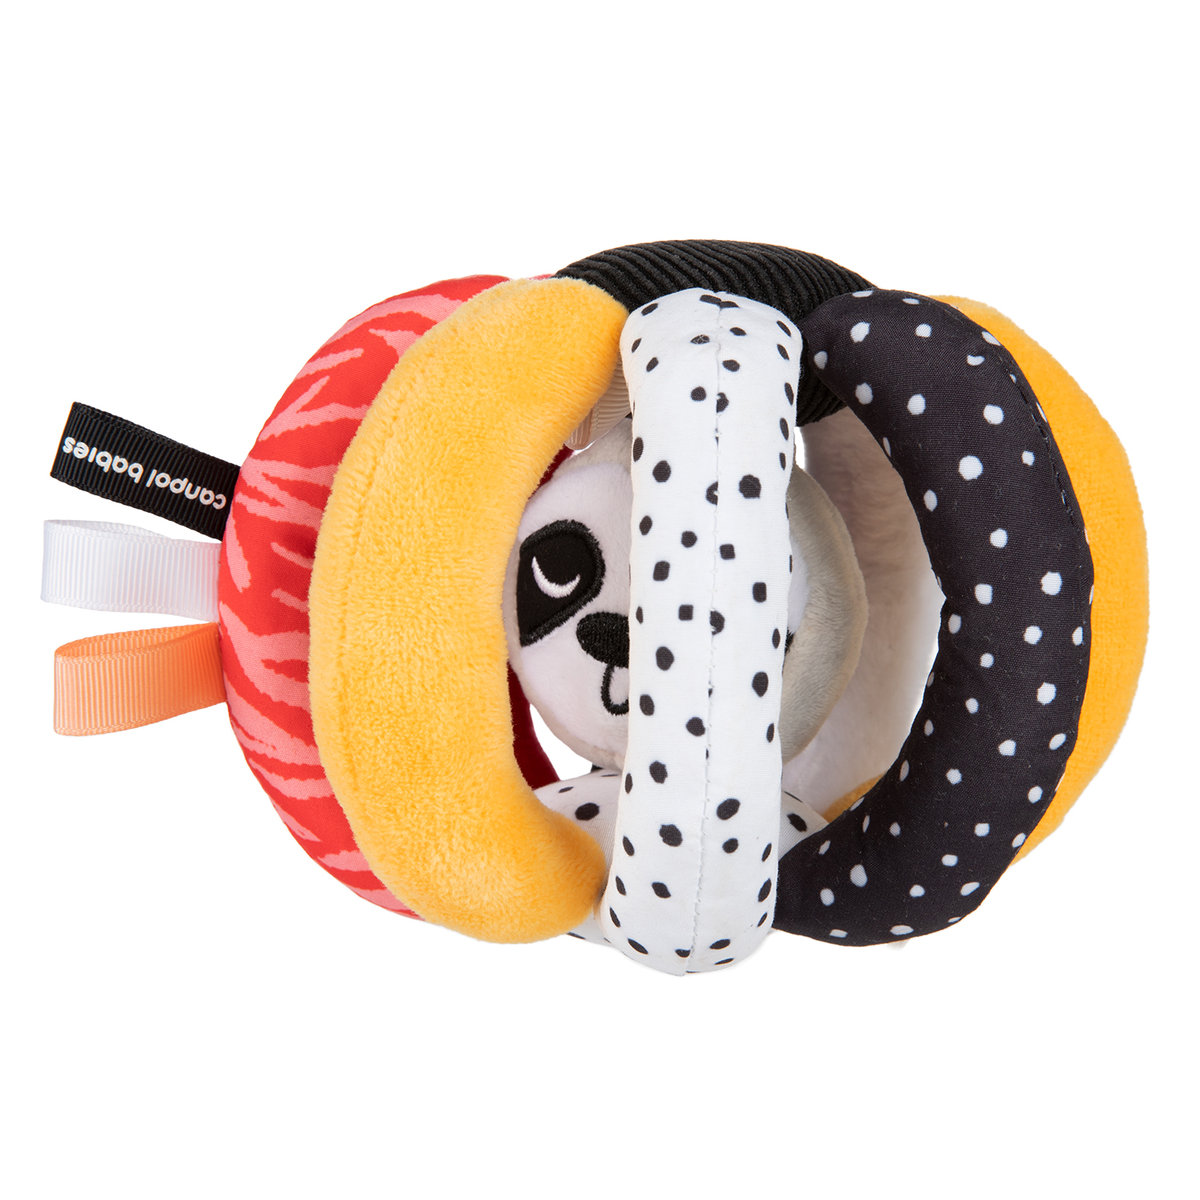 Фото - Інтерактивні іграшки Canpol Babies sensoryczna piłka z grzechotką i piszczkiem BabiesBoo 